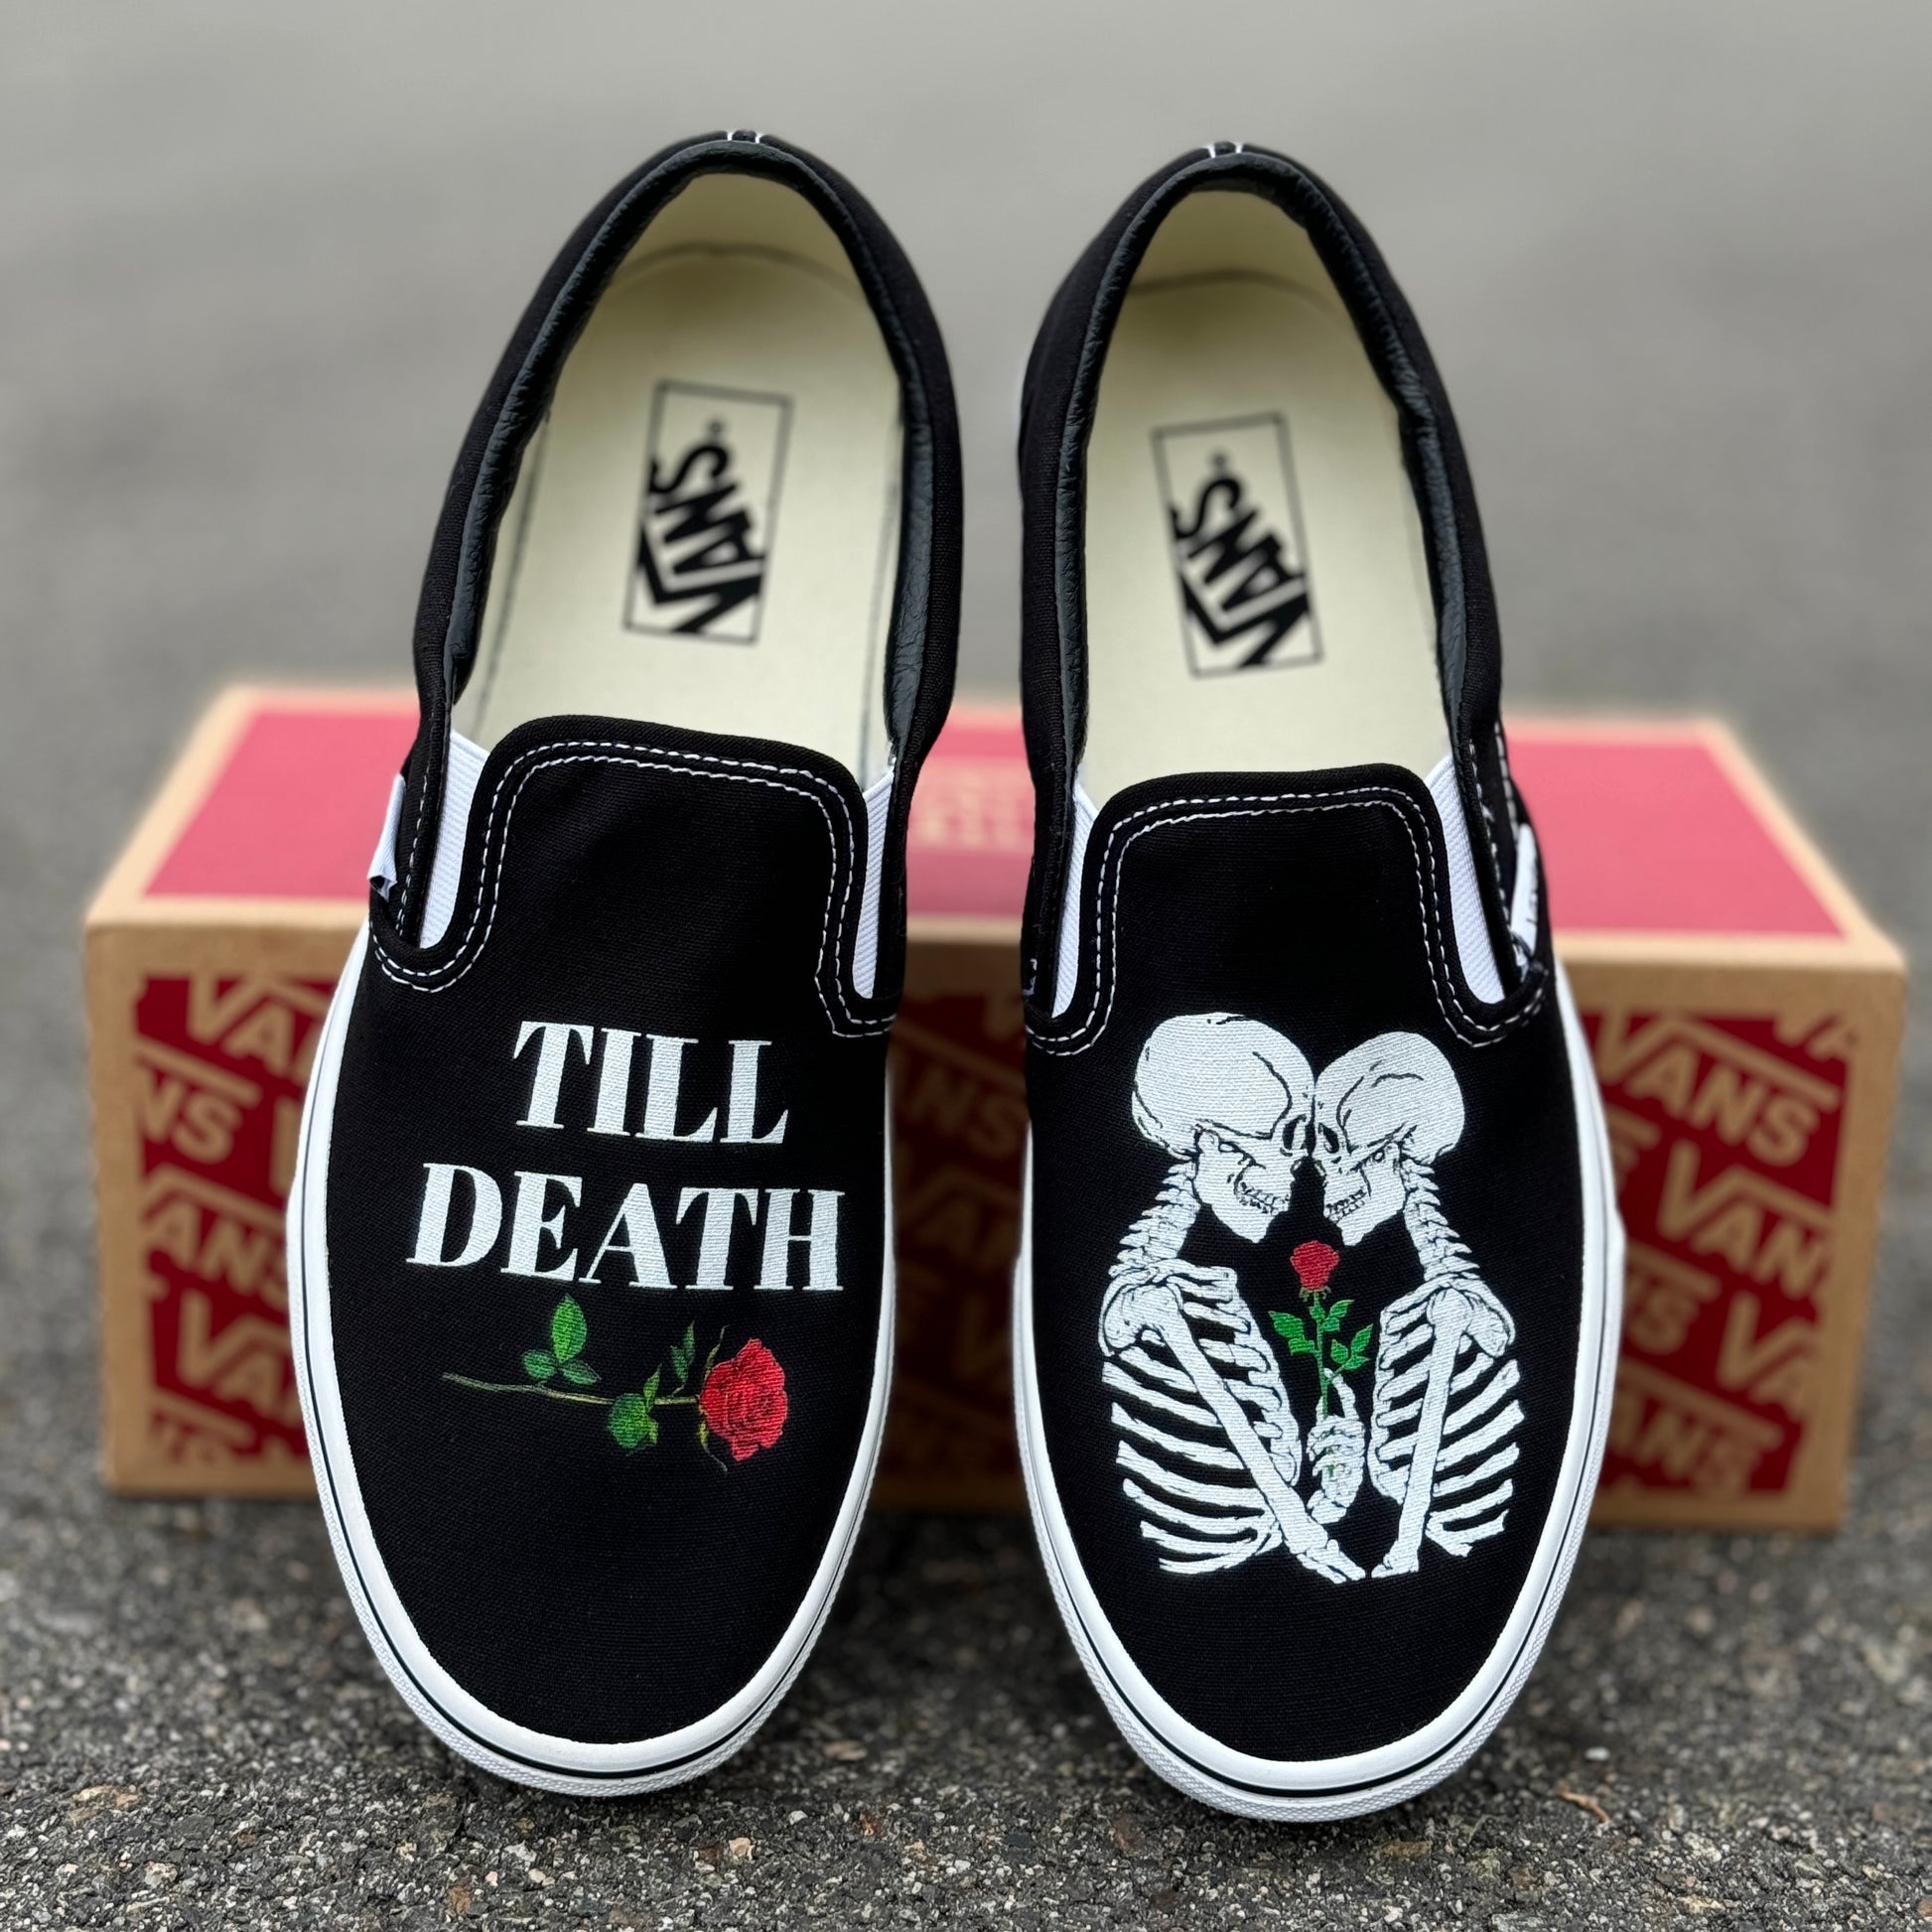 till death wedding vans shoes kissing skeleton wedding shoes